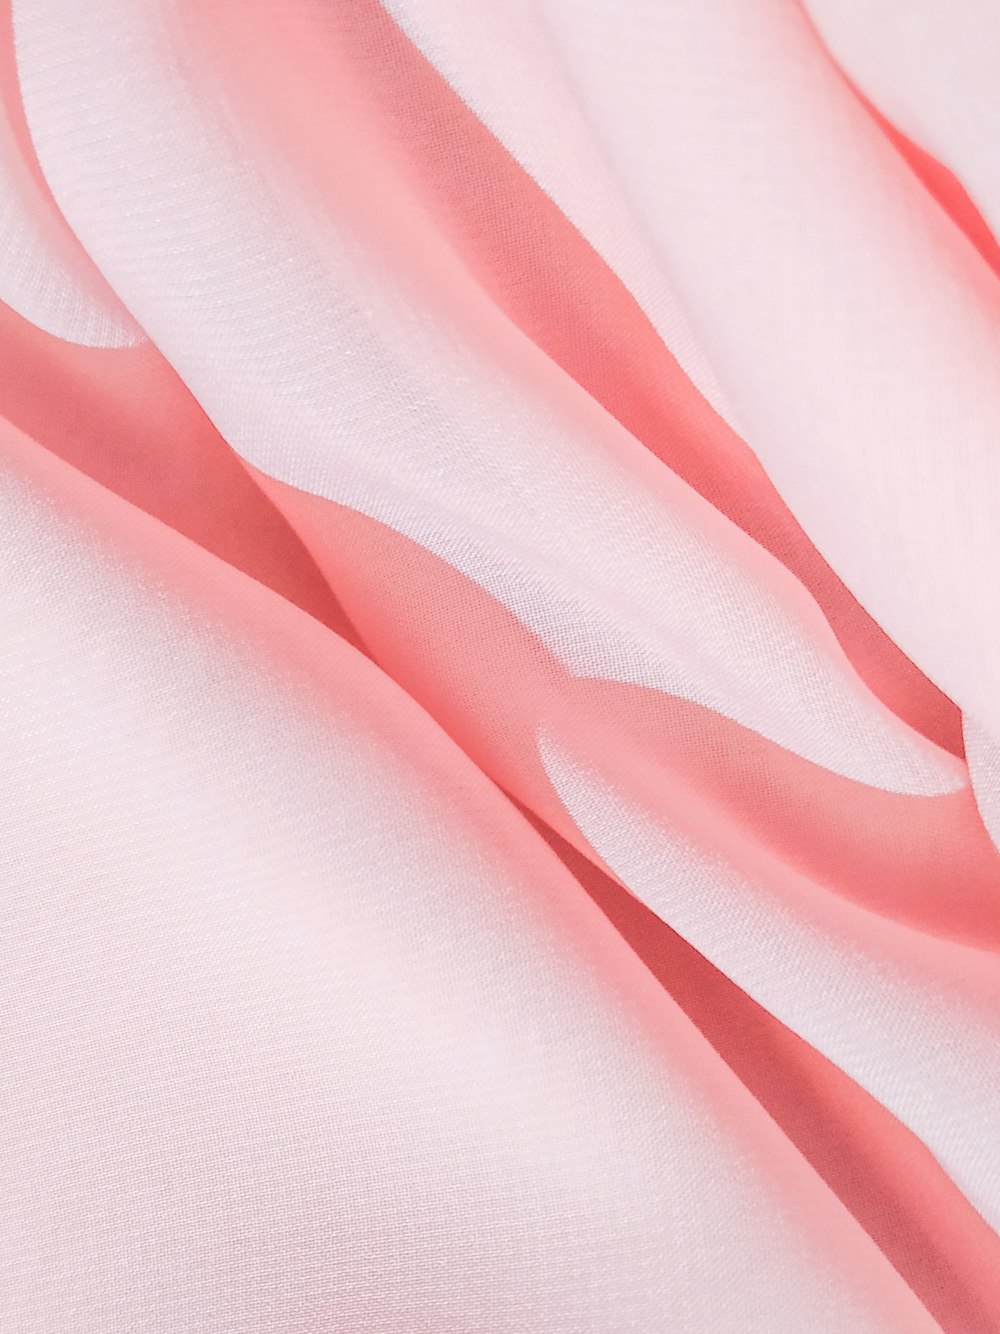 textil rosa en fotografía de primer plano